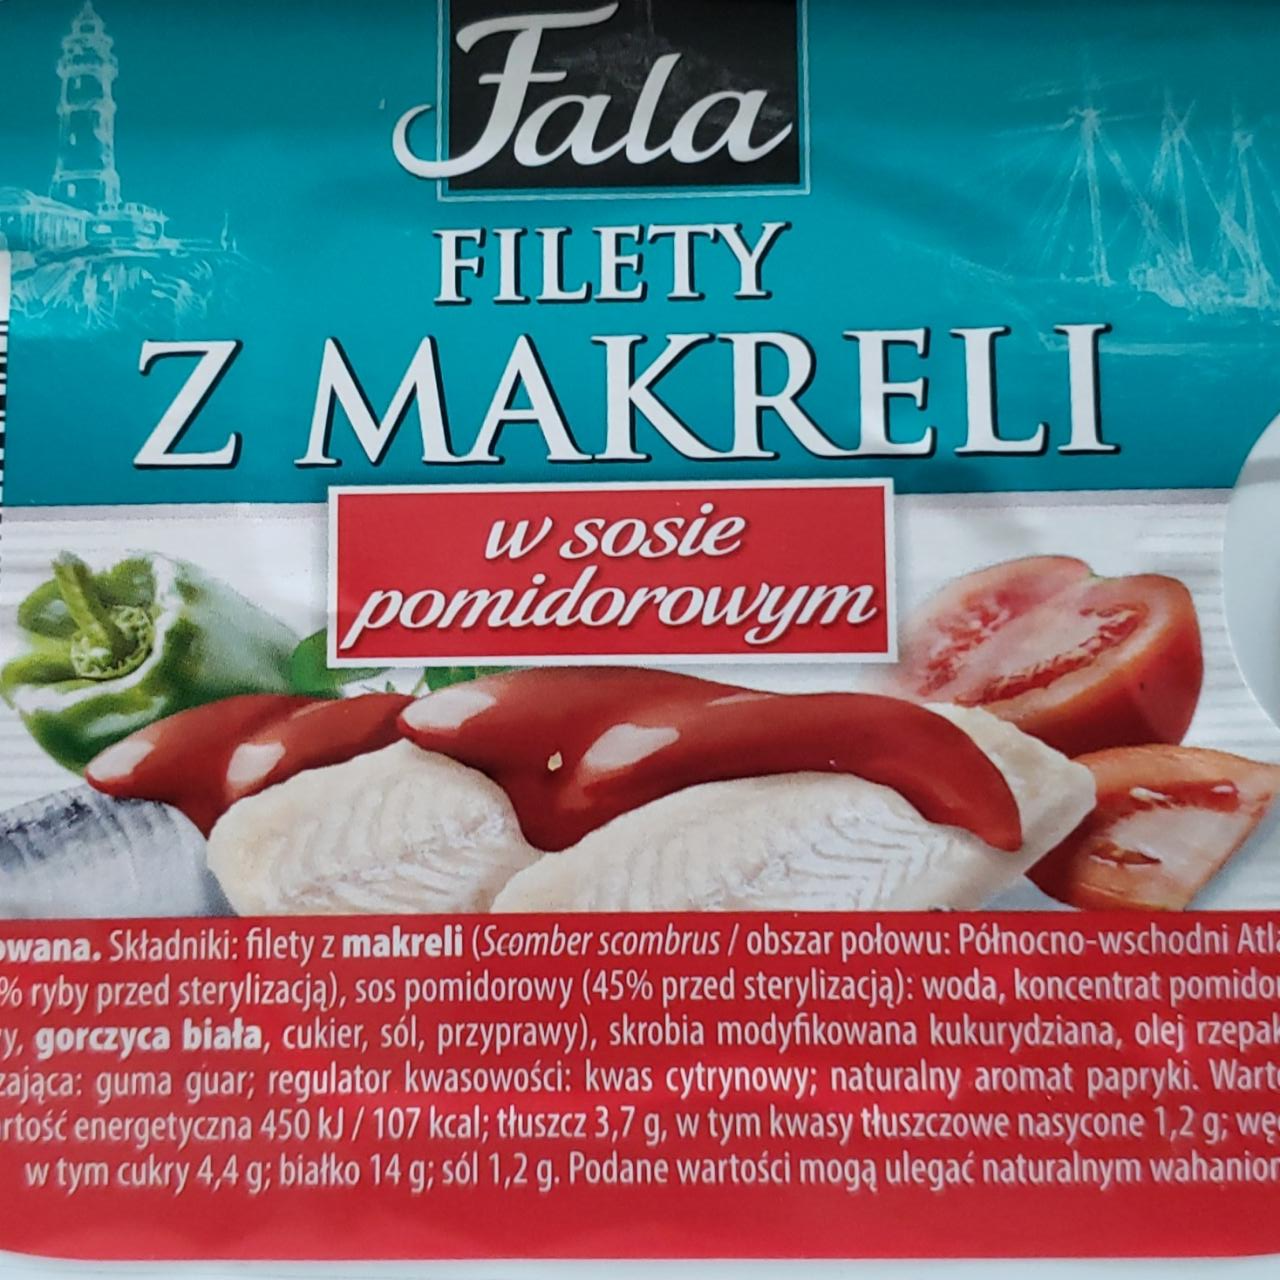 Фото - Filety z makreli w sosie pomidorowym Fala